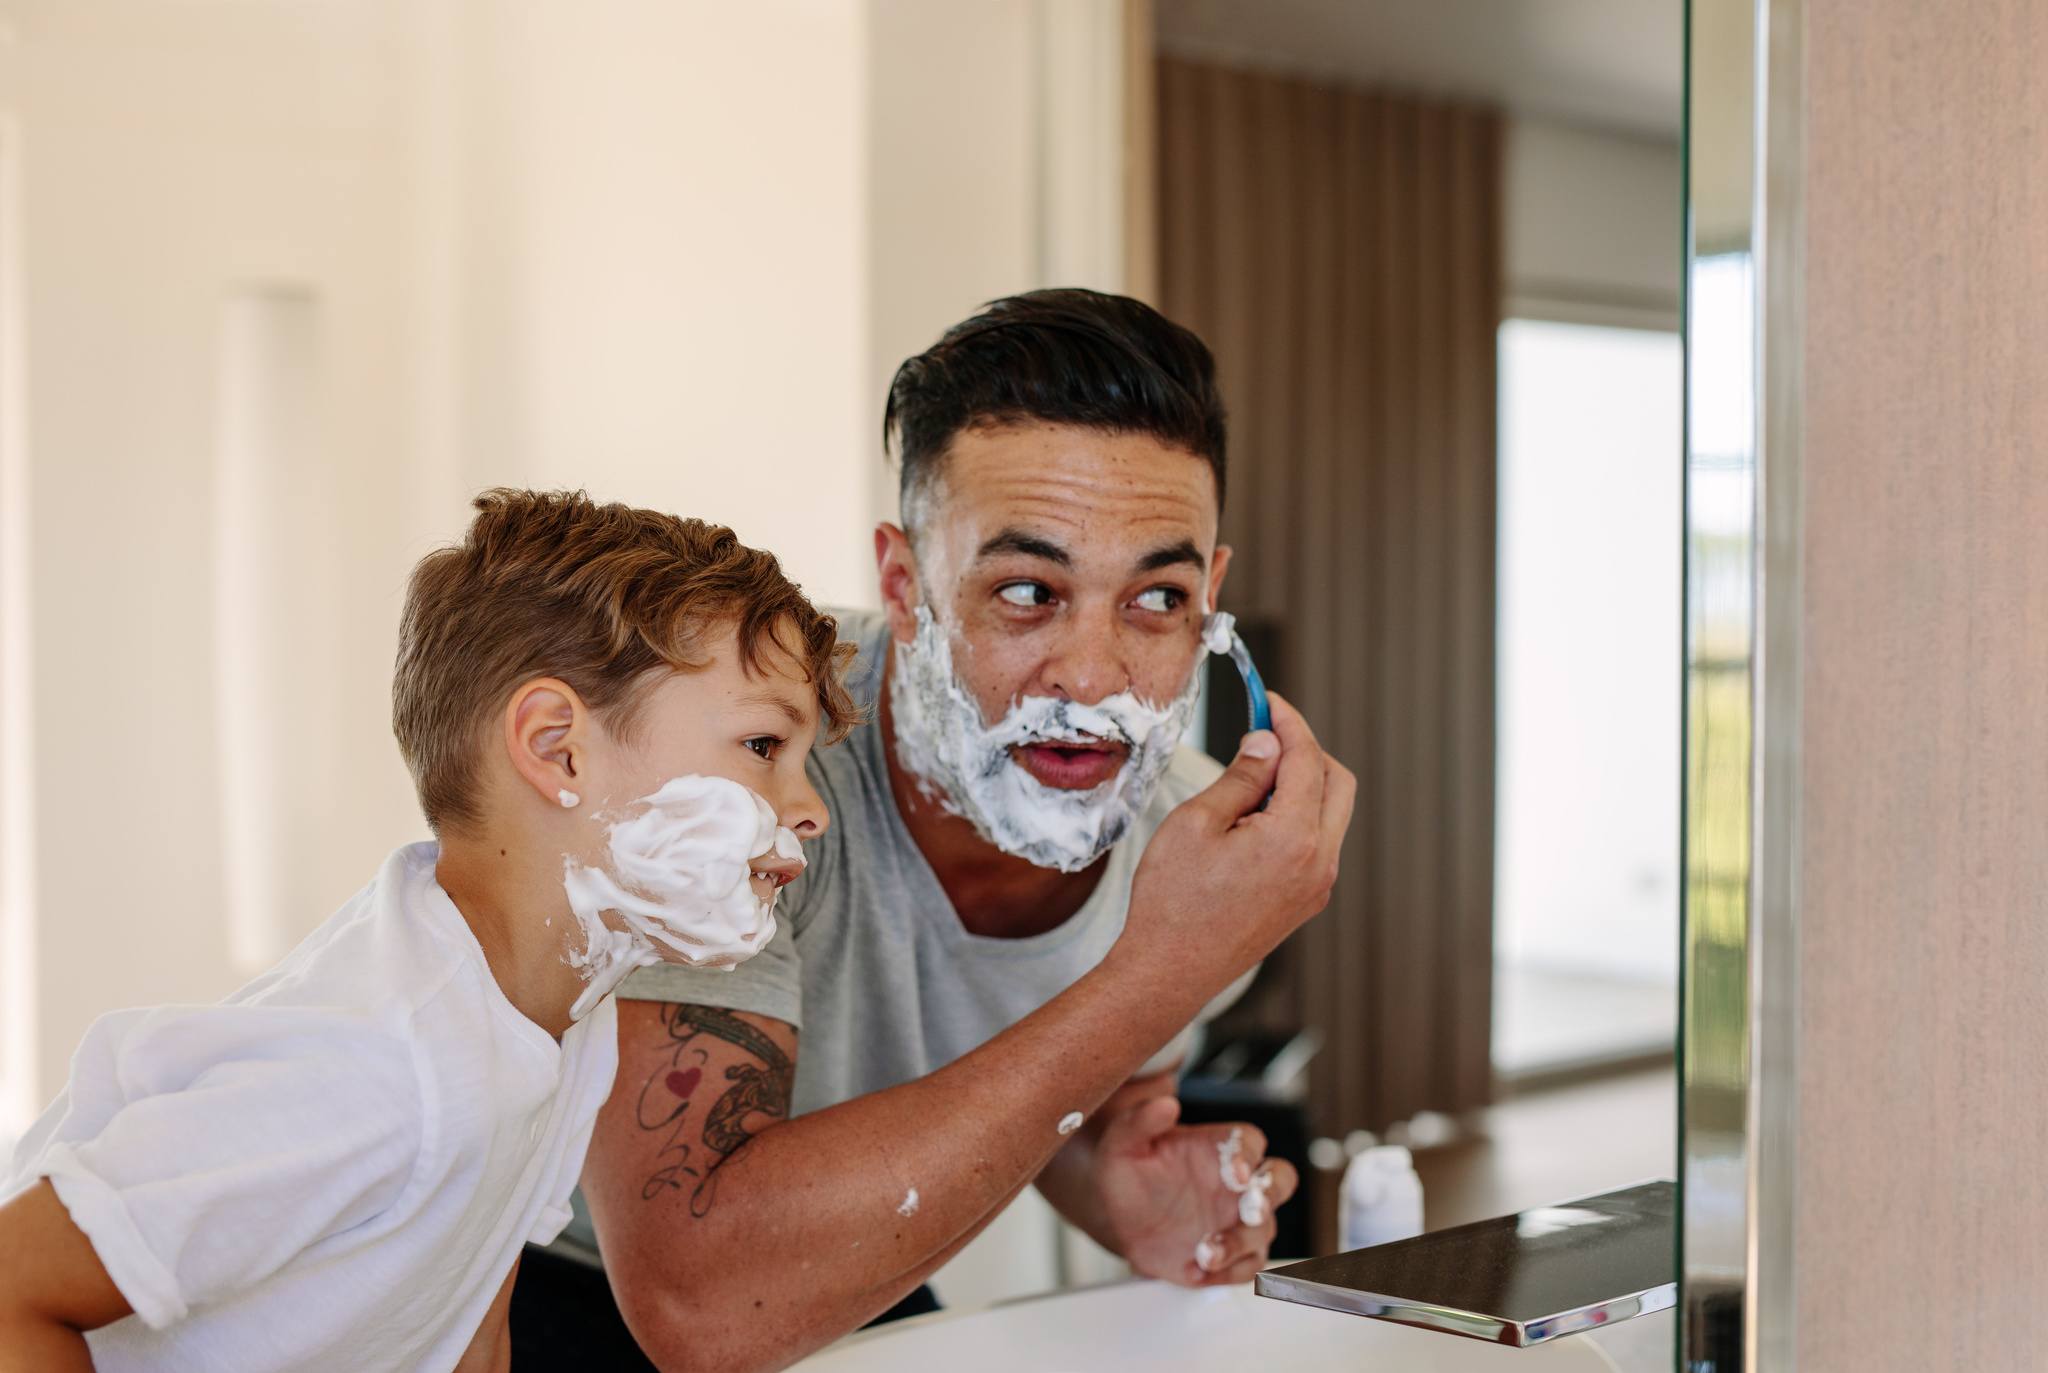 Брею сыну видео. Мужчина бреется. Отец и сын парикмахерская. Мальчик бреется.